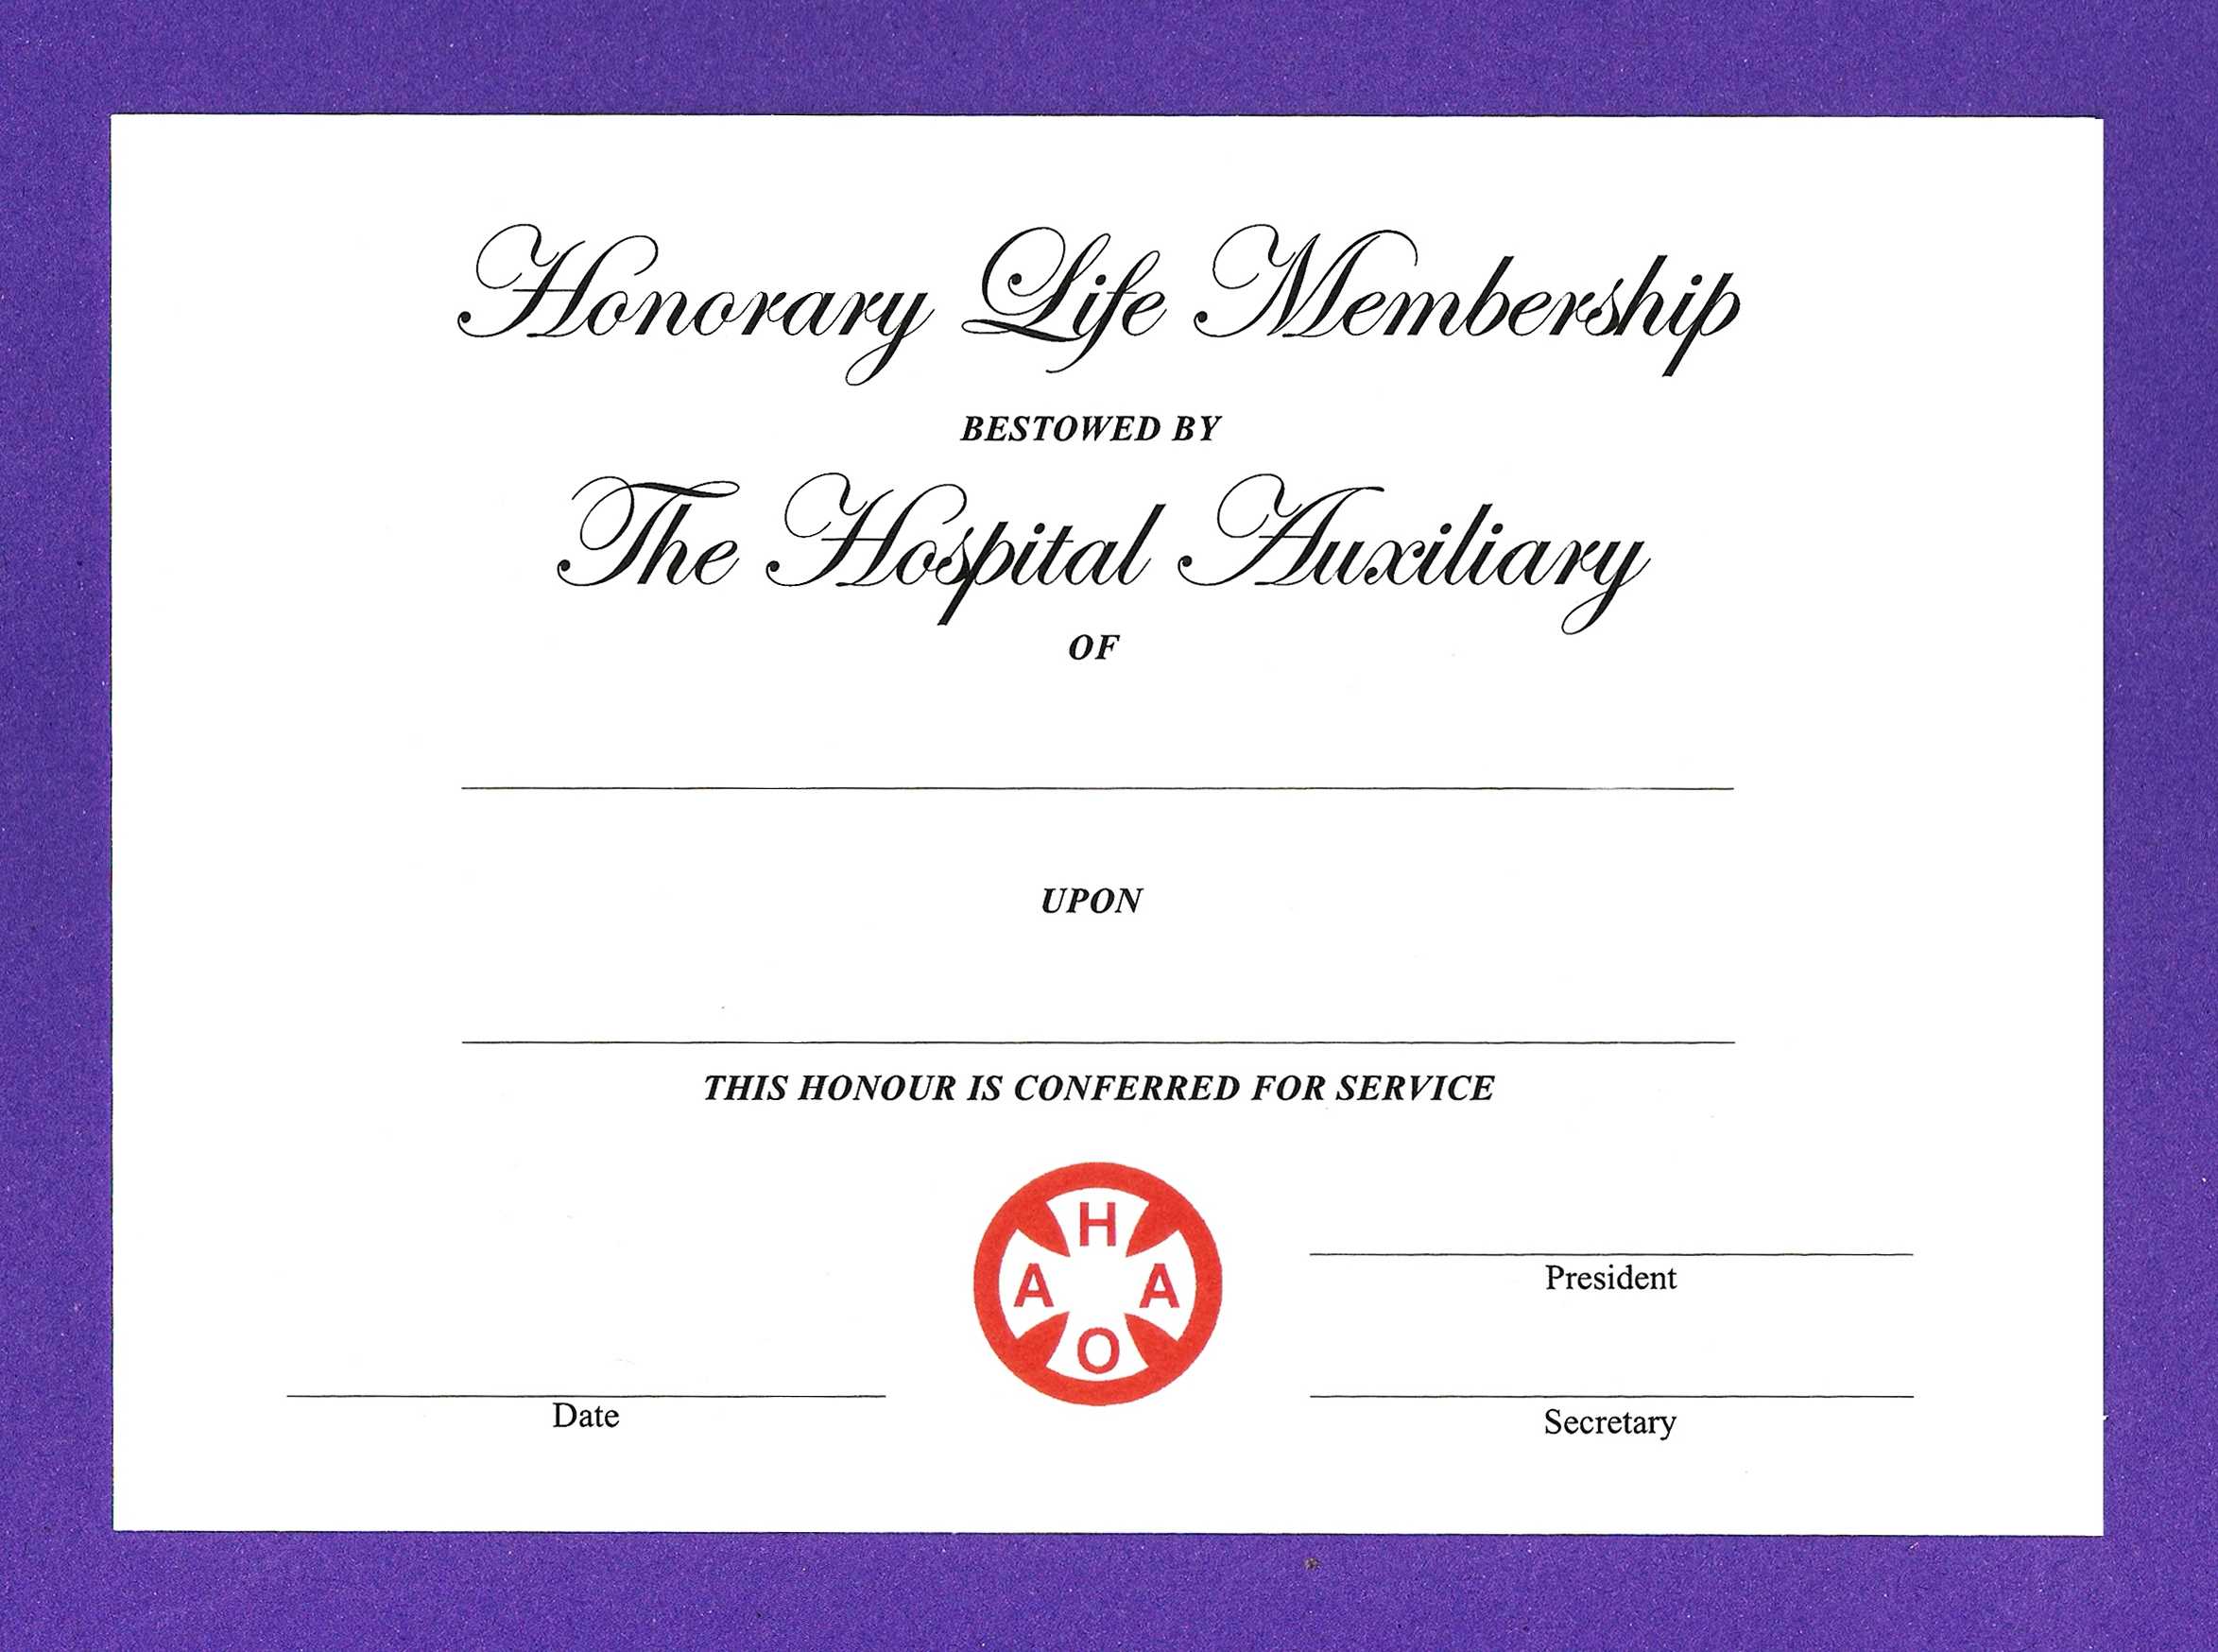 Honorary Membership Certificate Template - Calep.midnightpig.co With Life Membership Certificate Templates